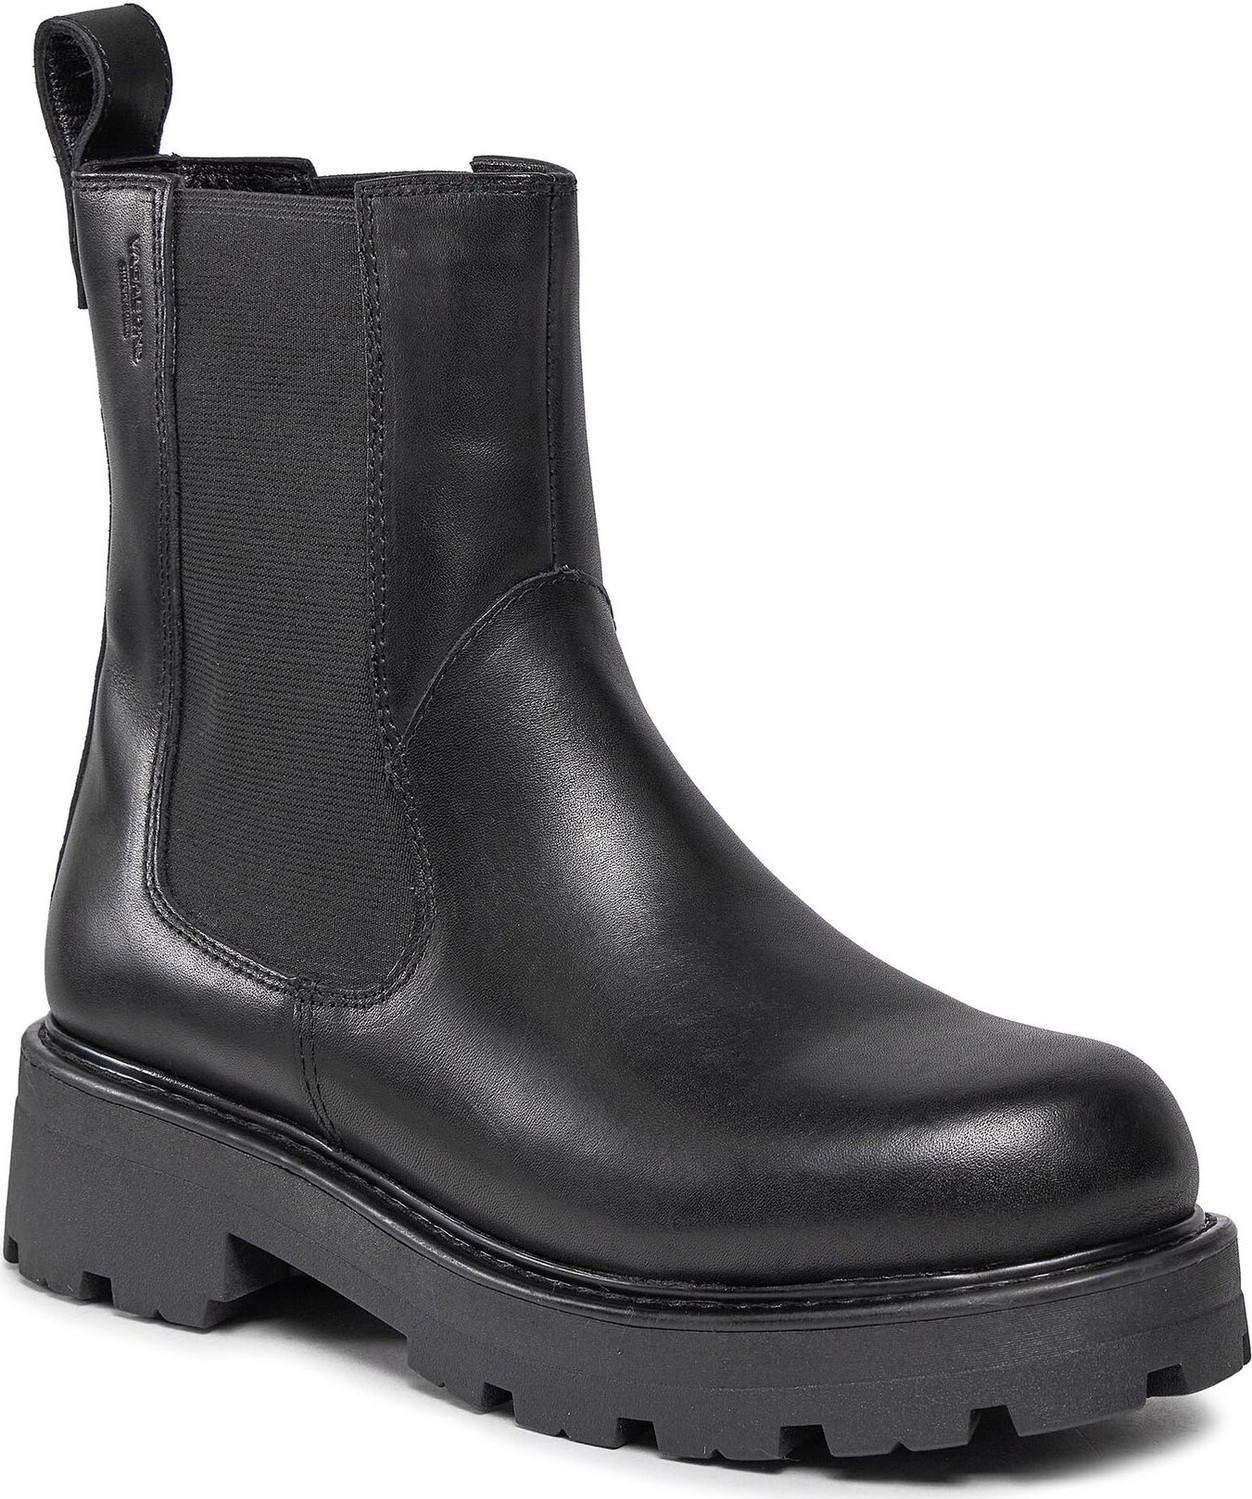 Kotníková obuv s elastickým prvkem Vagabond Cosmo 2.0 5459-301-20 Black